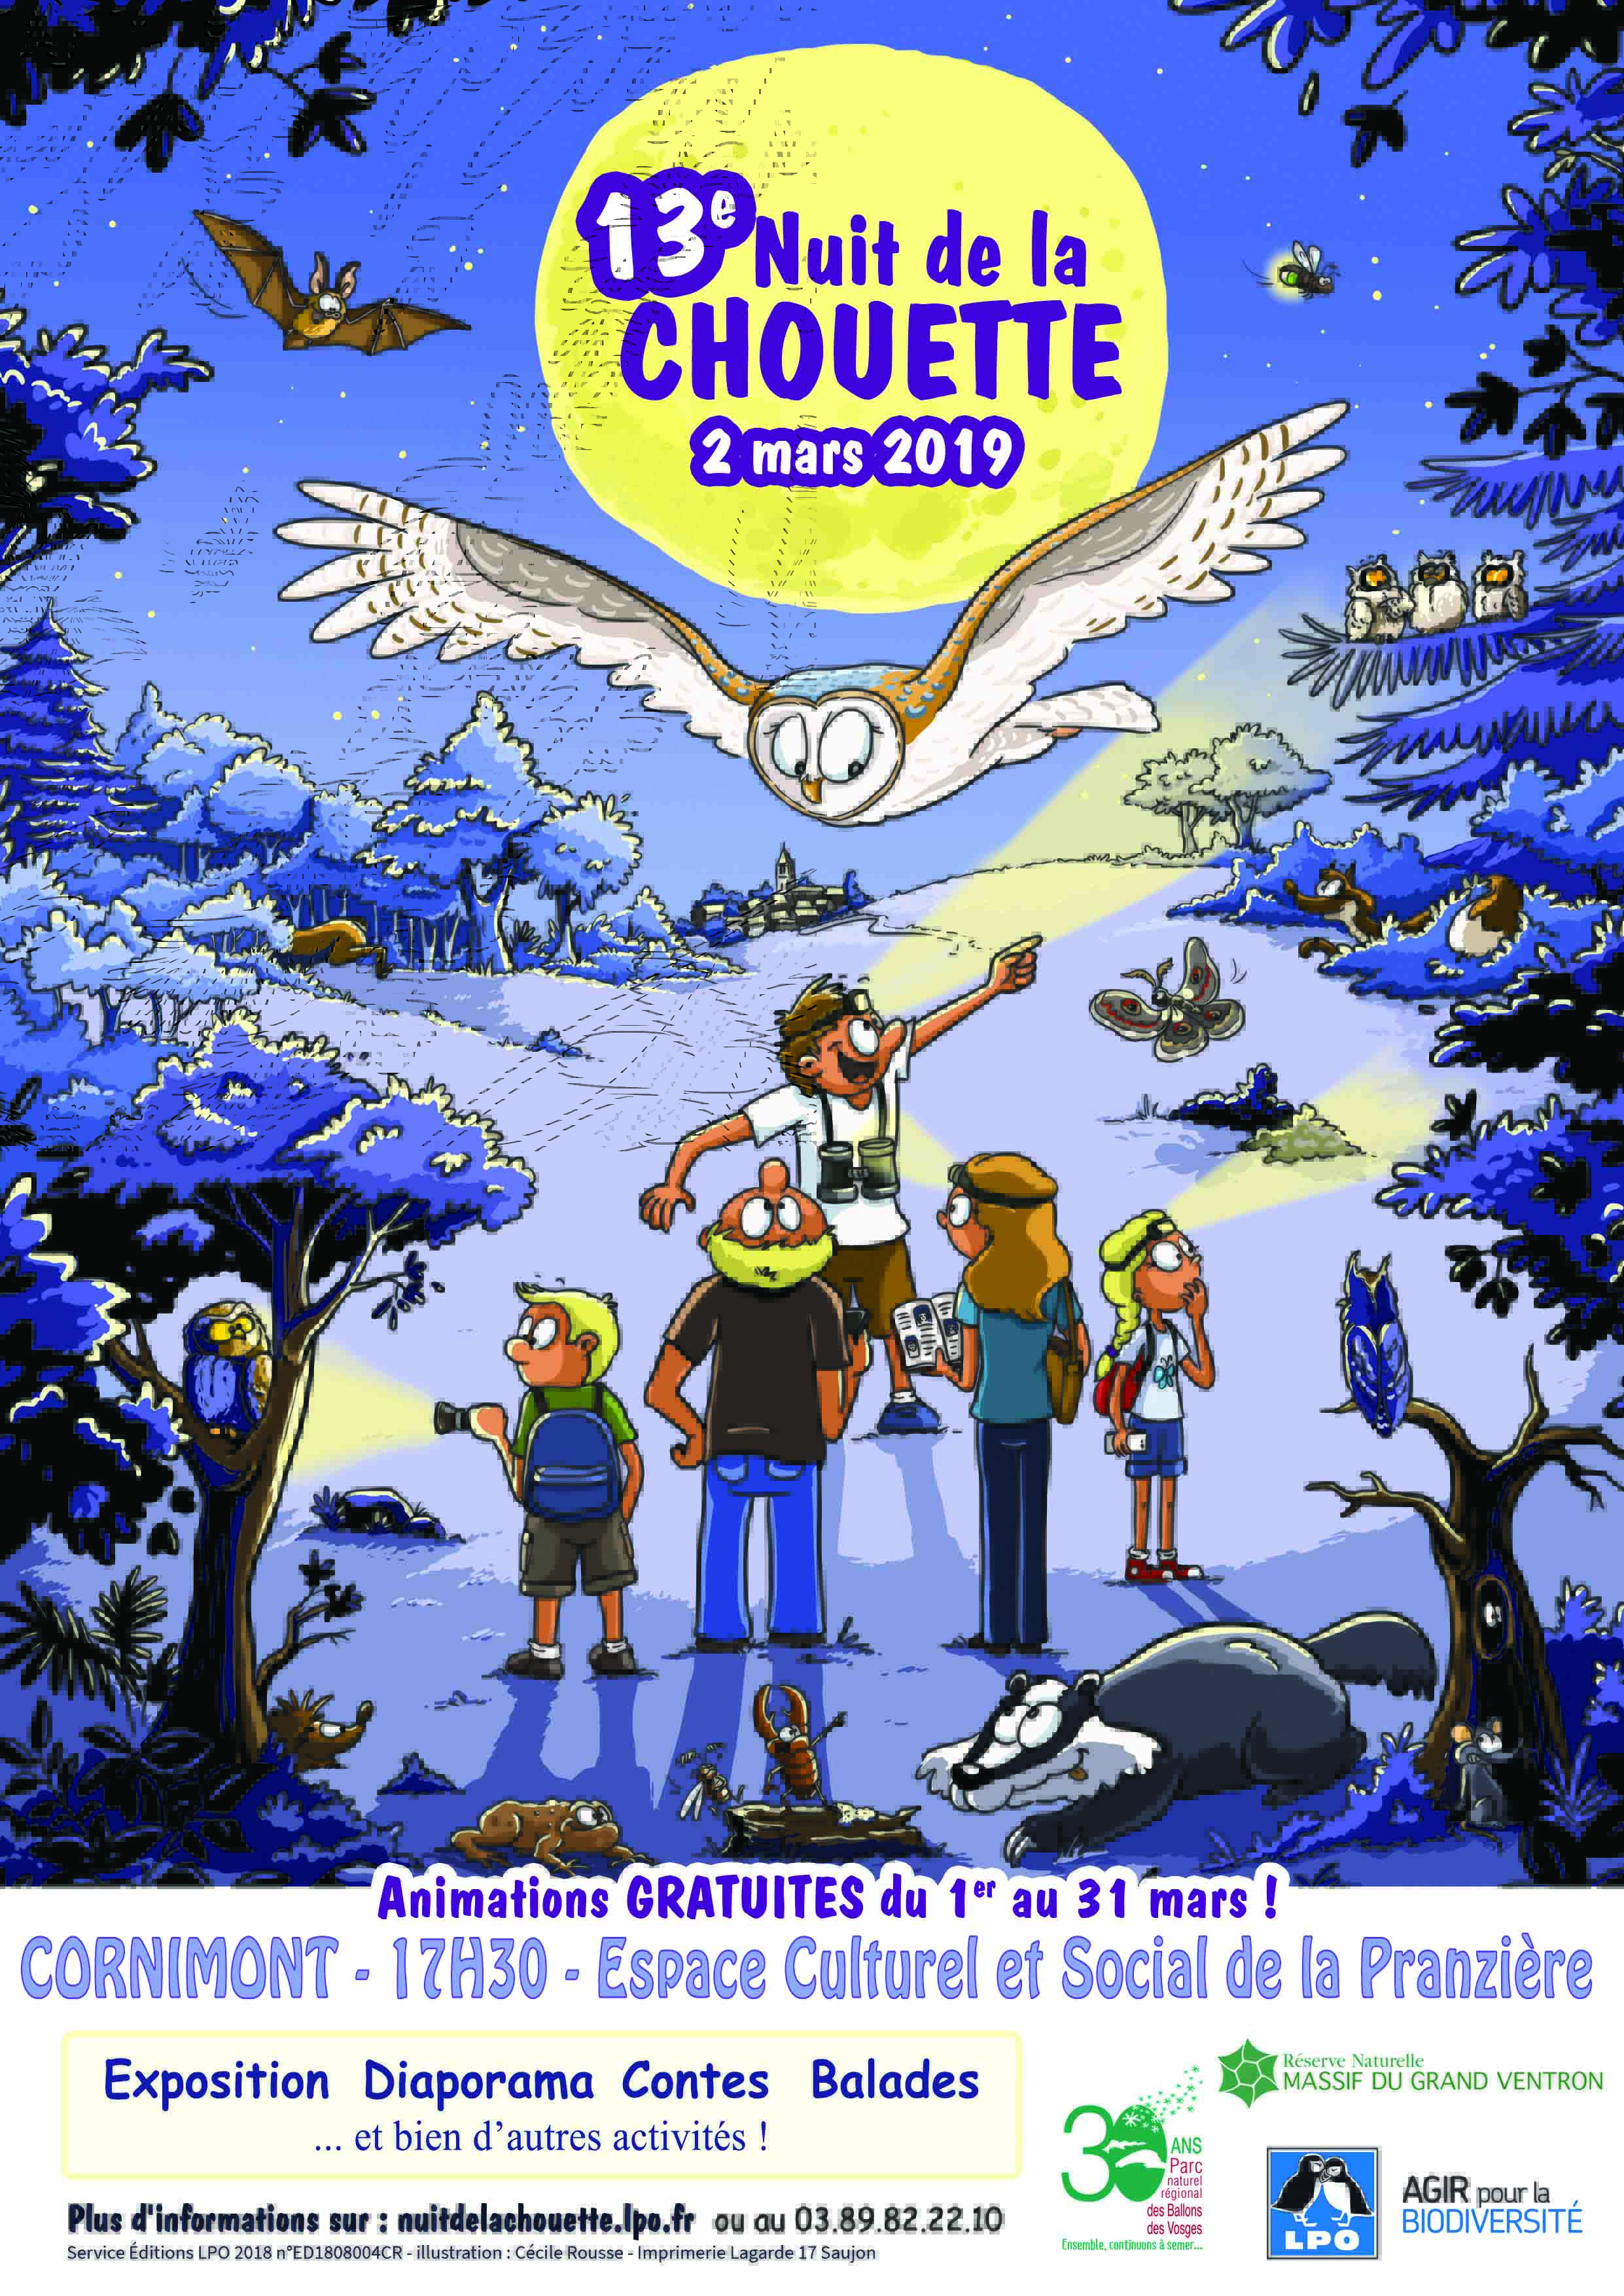 Le samedi 02 mars prochain aura lieu la 13ème édition de Nuit de de la Chouette.